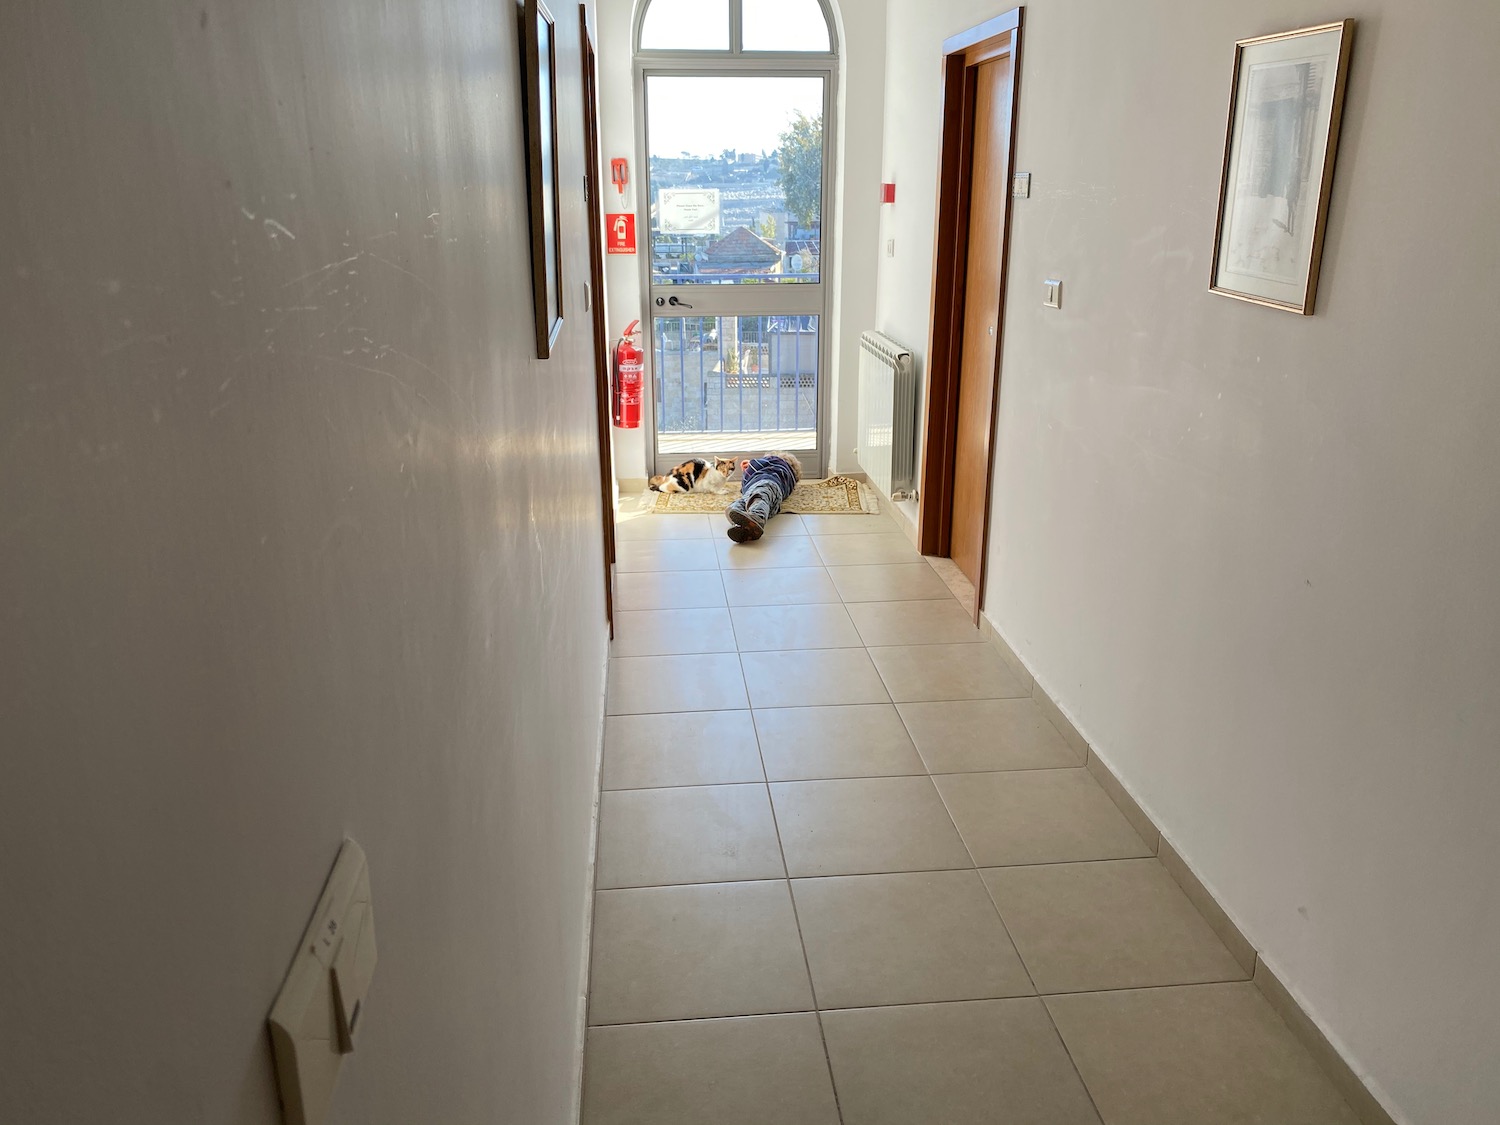 a dog lying on a rug in a hallway